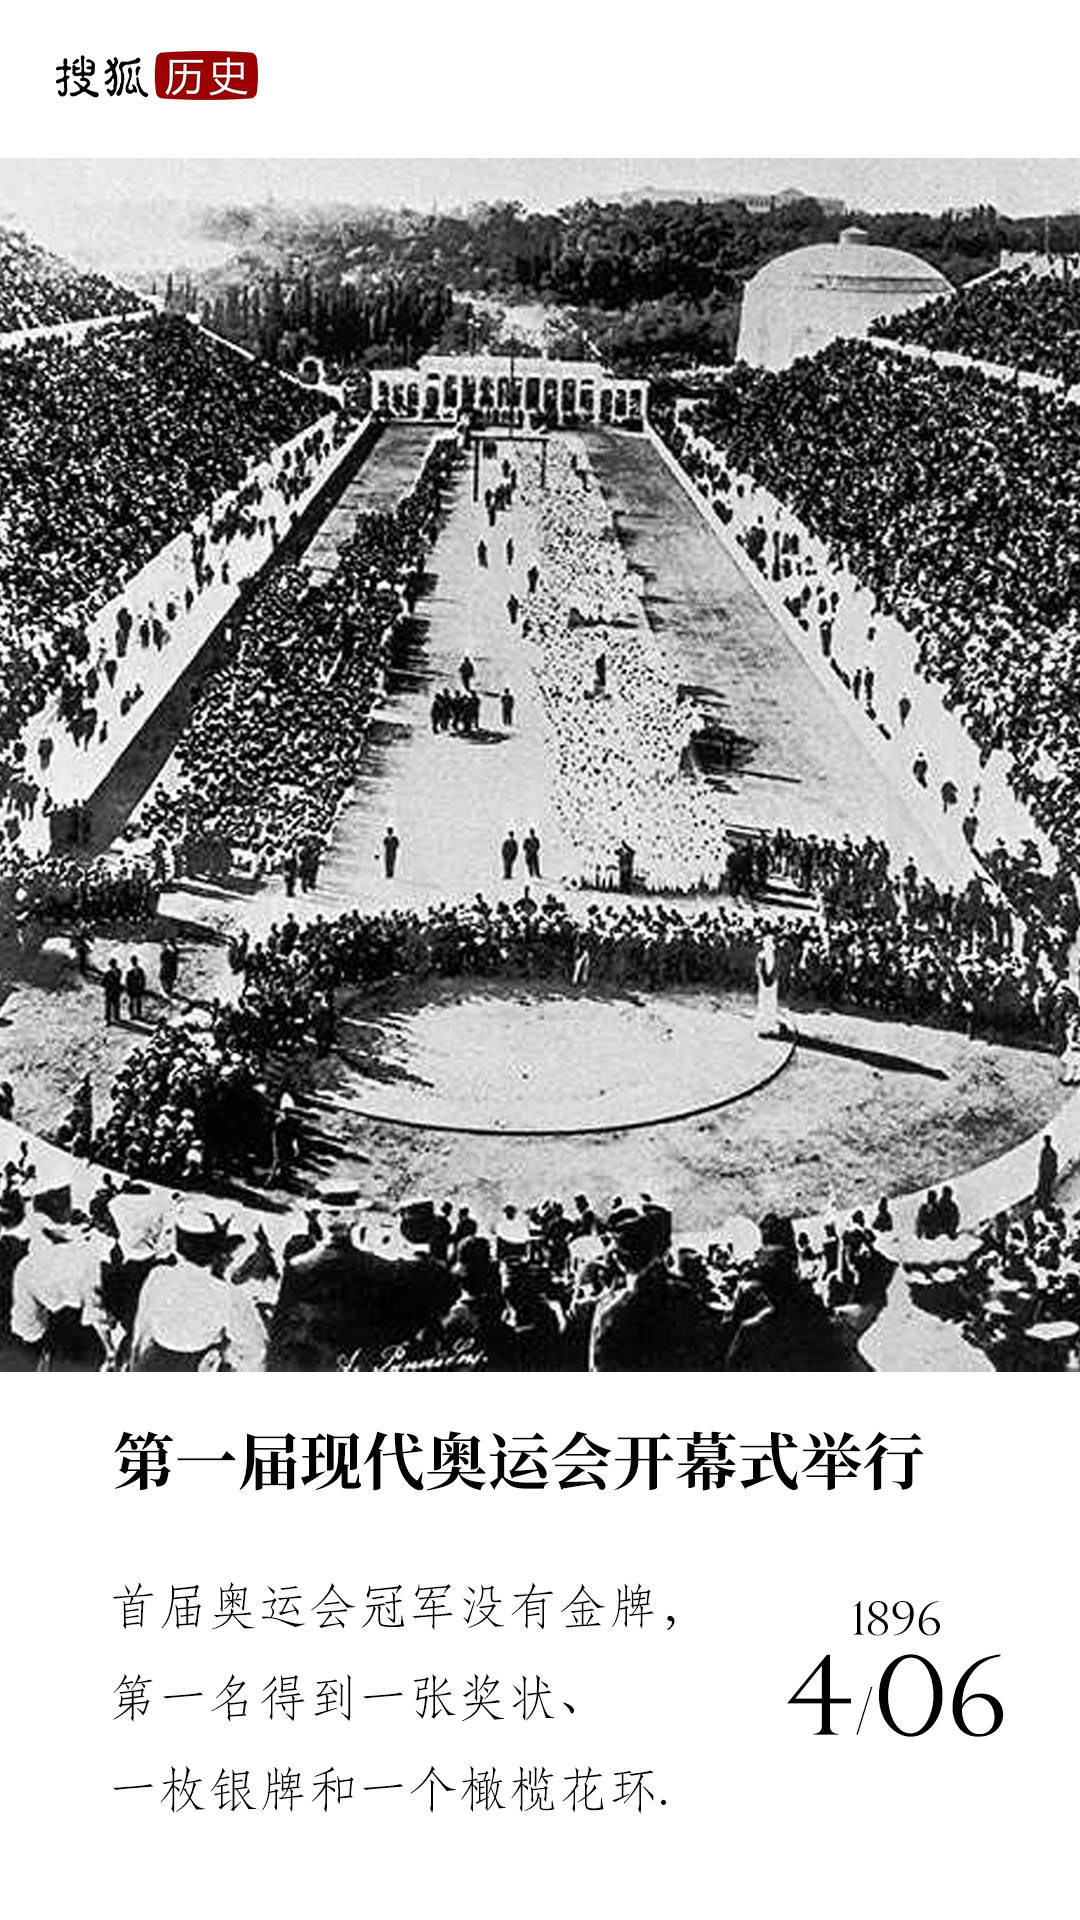 历史上的今天 | 第一届现代奥运会开幕式举行